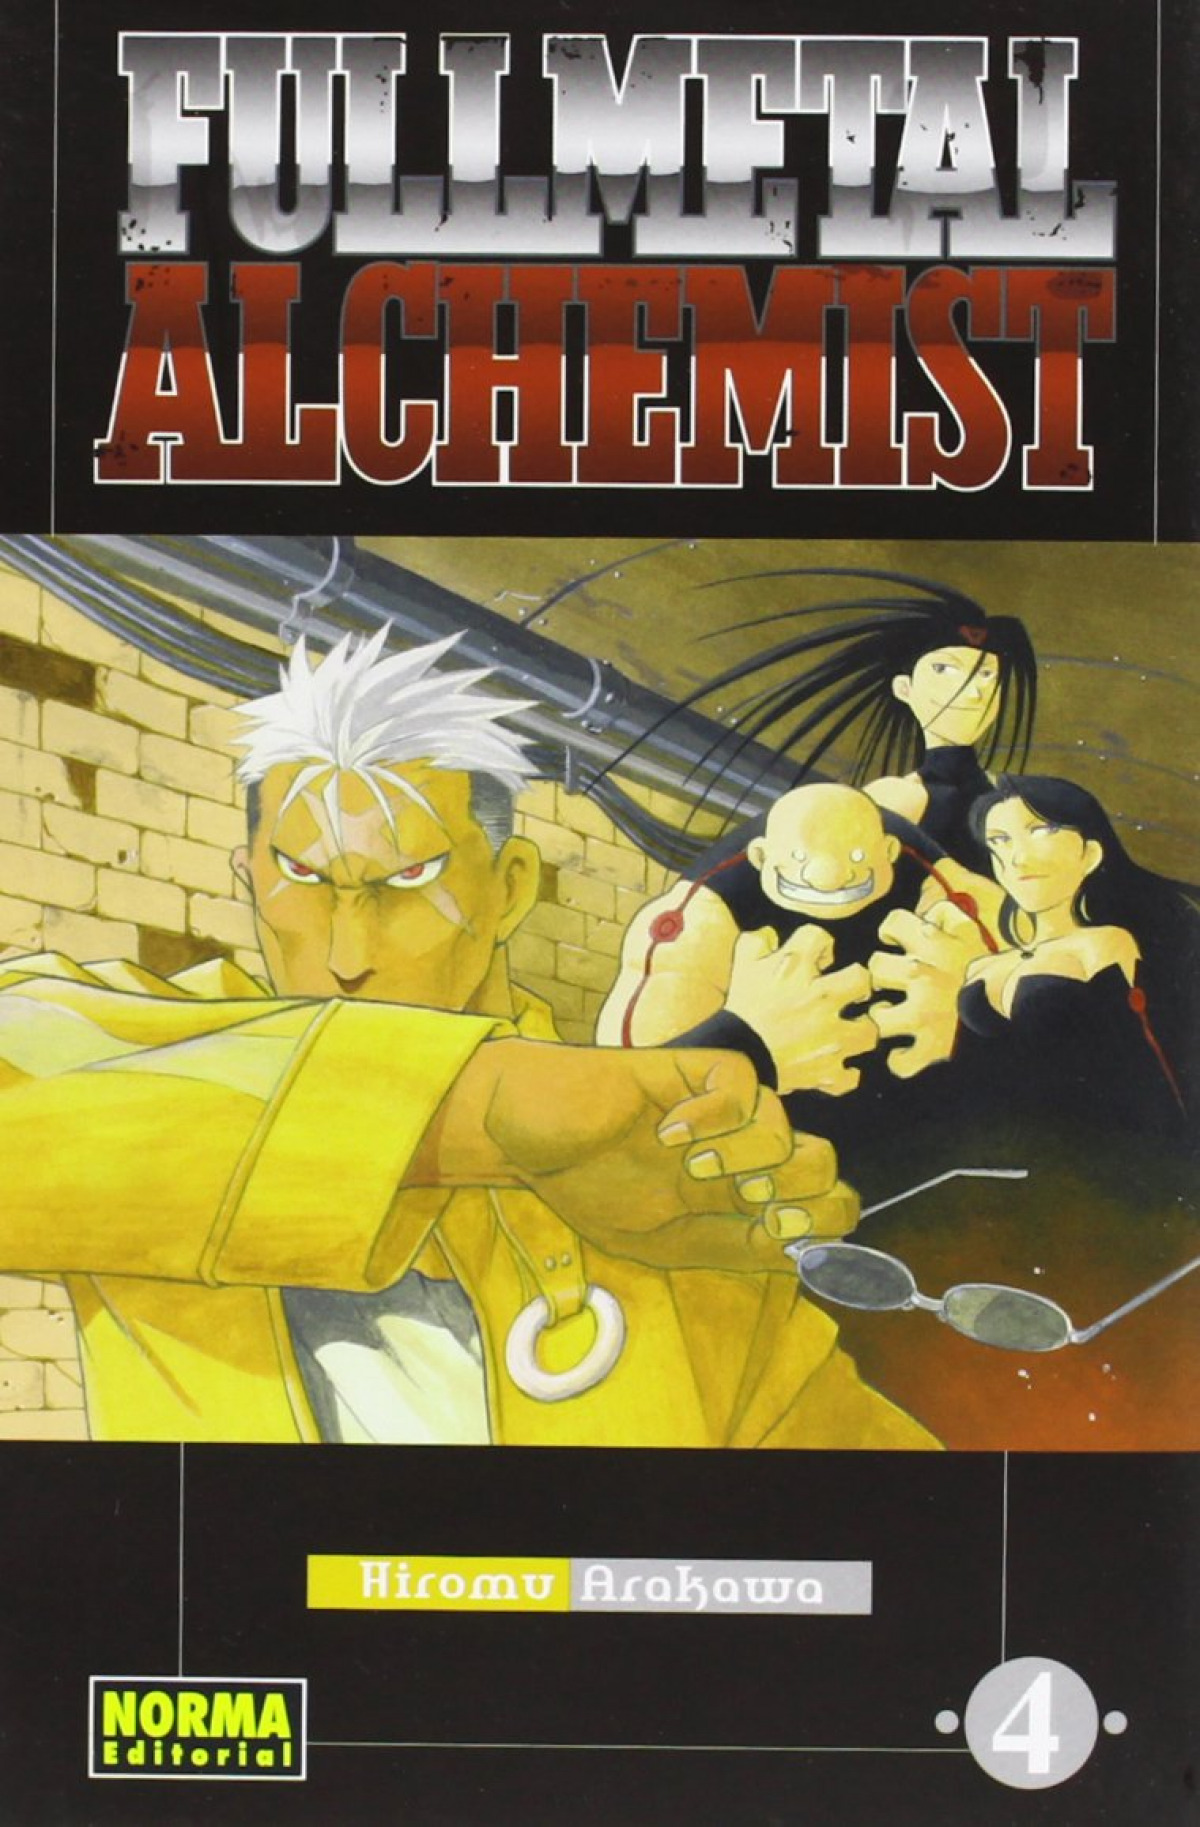 Fullmetal alchemist 4 - Arakawa, Hiromu